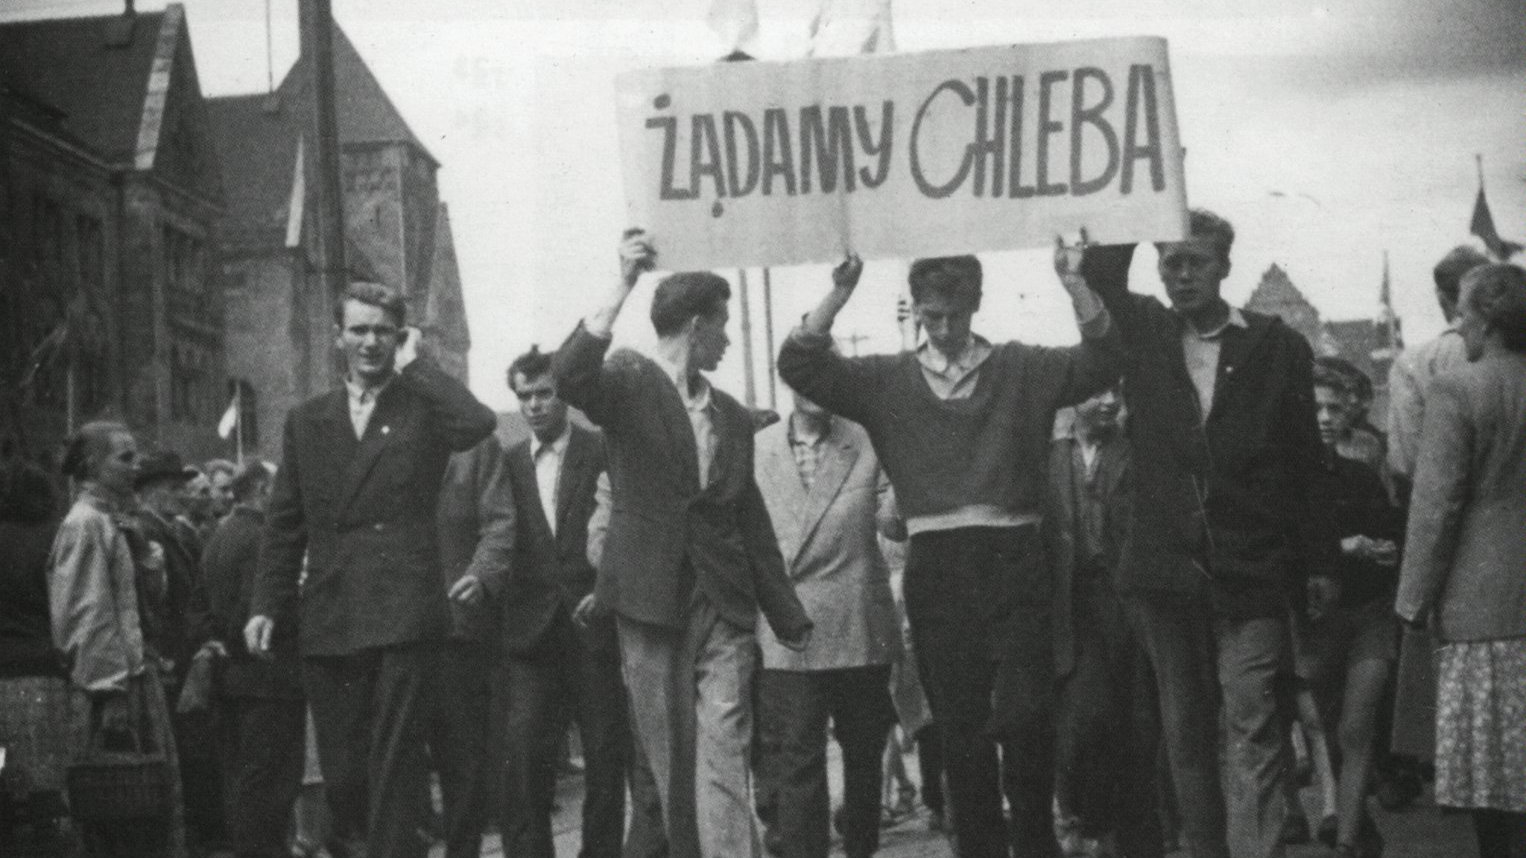 Pochód robotników. Trzech mężczyzn na przodzie trzyma transparent z napisem "Żądamy chleba". Po prawej stronie idzie Janusz Kulas.